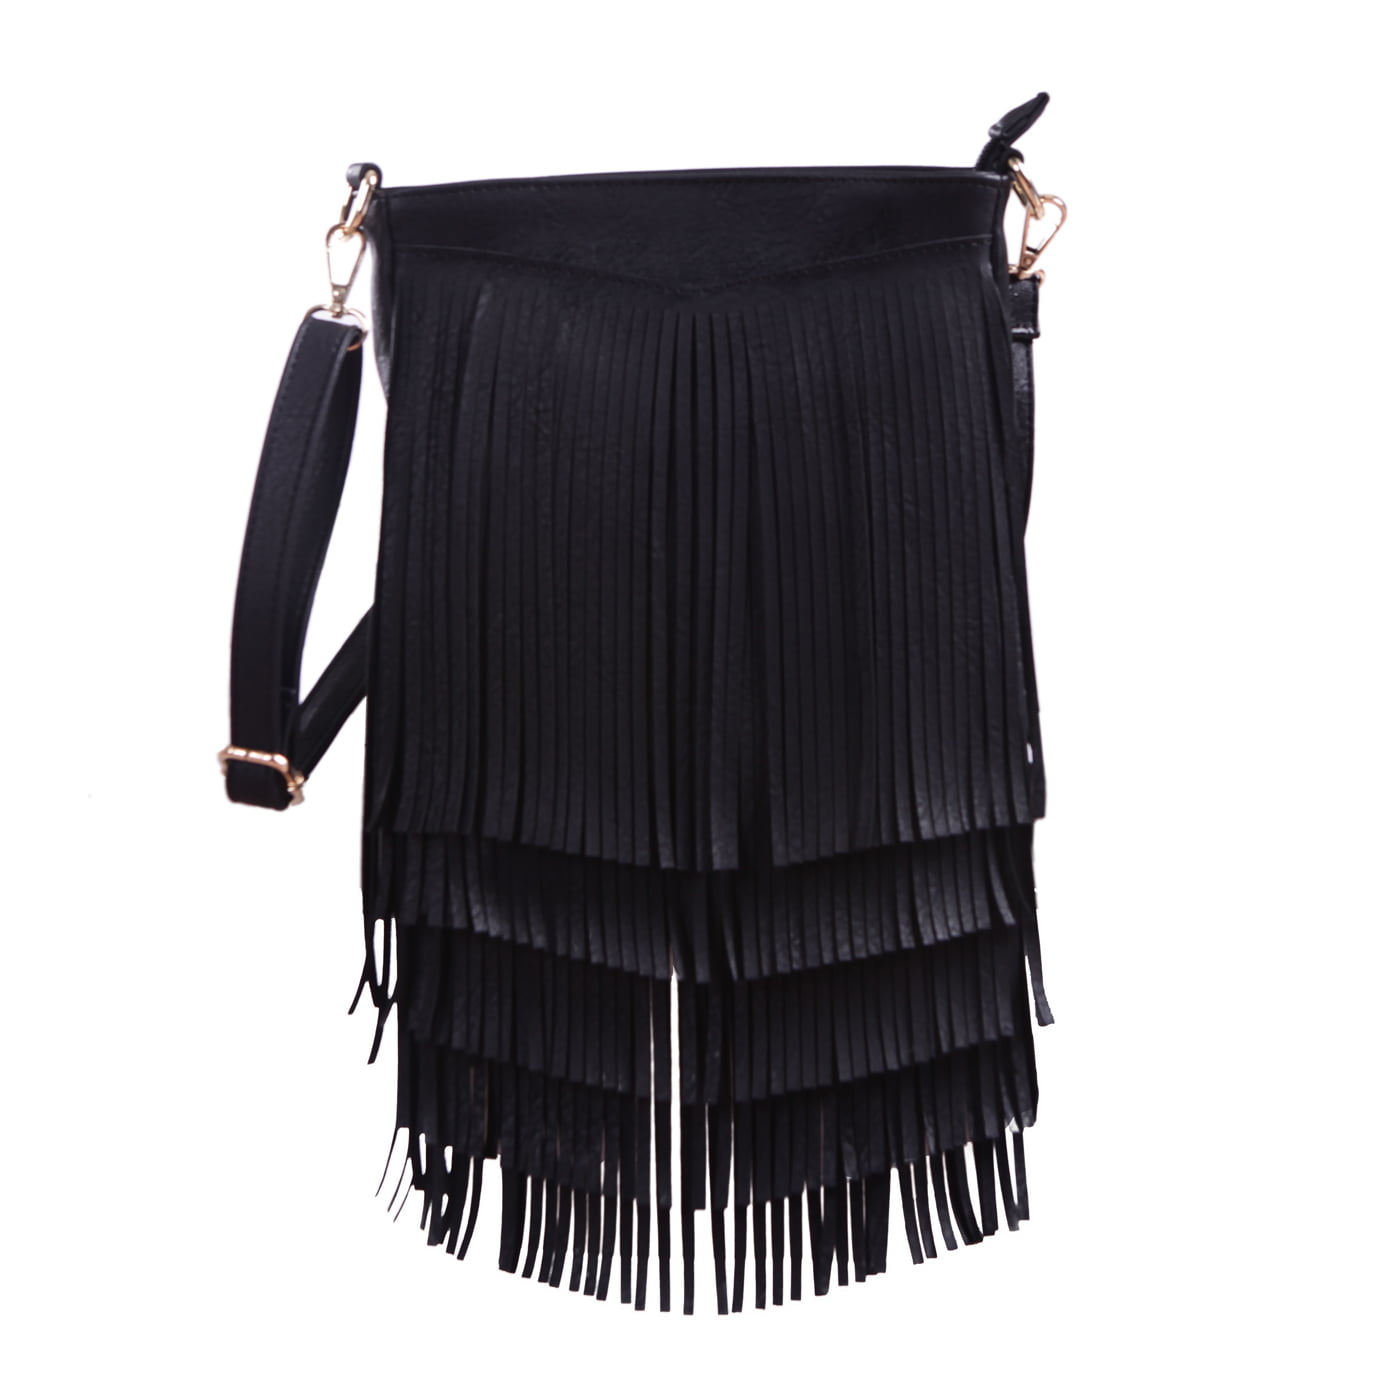 Vbiger Messenger Bag Shoulder Bag Women Leather Tassle Fringe Cross Body Bag Hand Bag for Shopping Casual Black Party